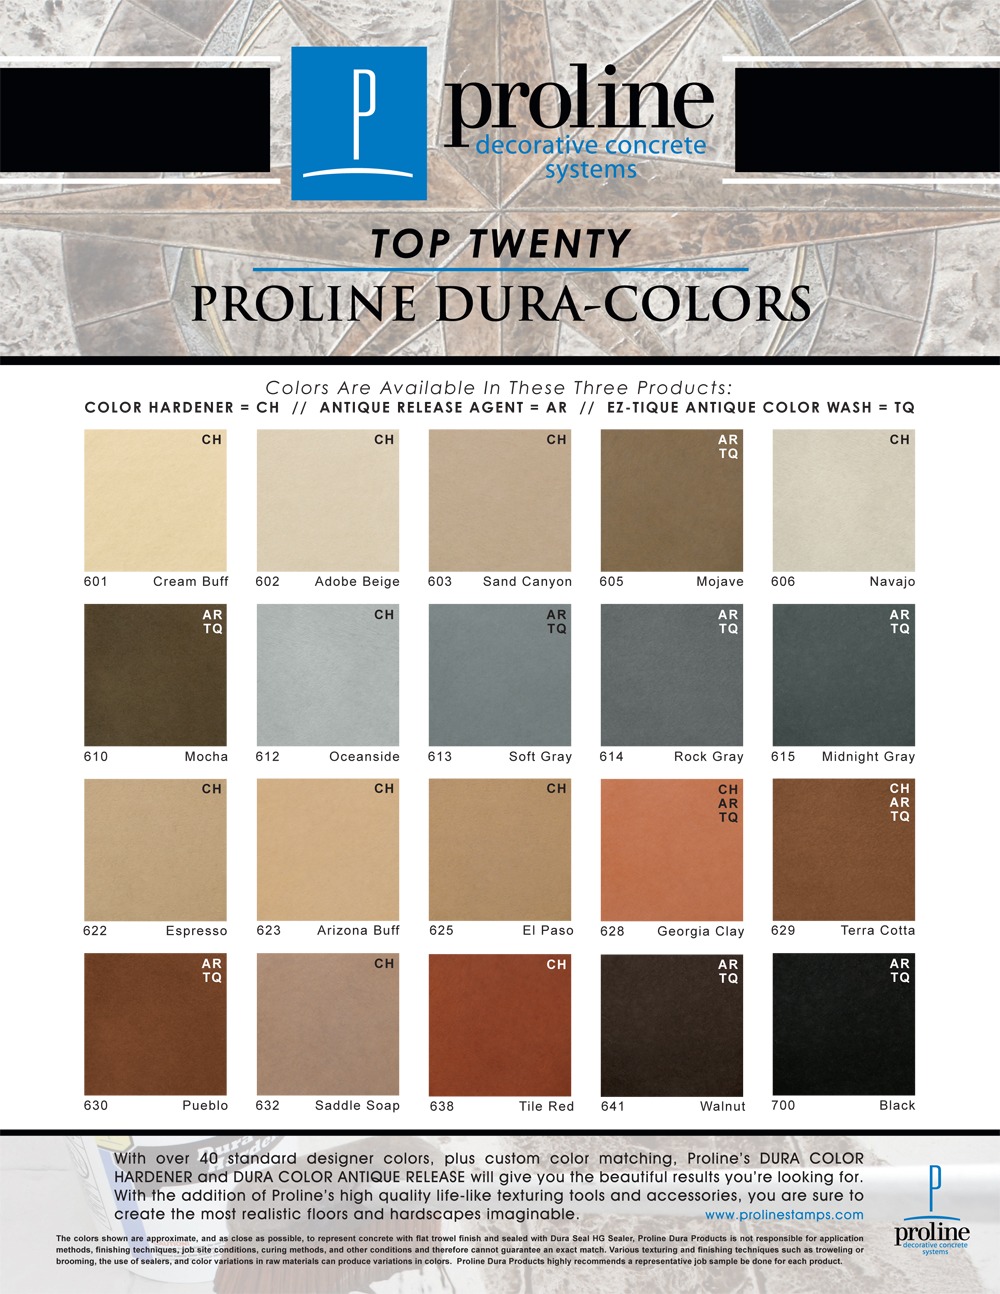 Proline Decorative Concrete Systems Proline Dura-Colors Top Twenty